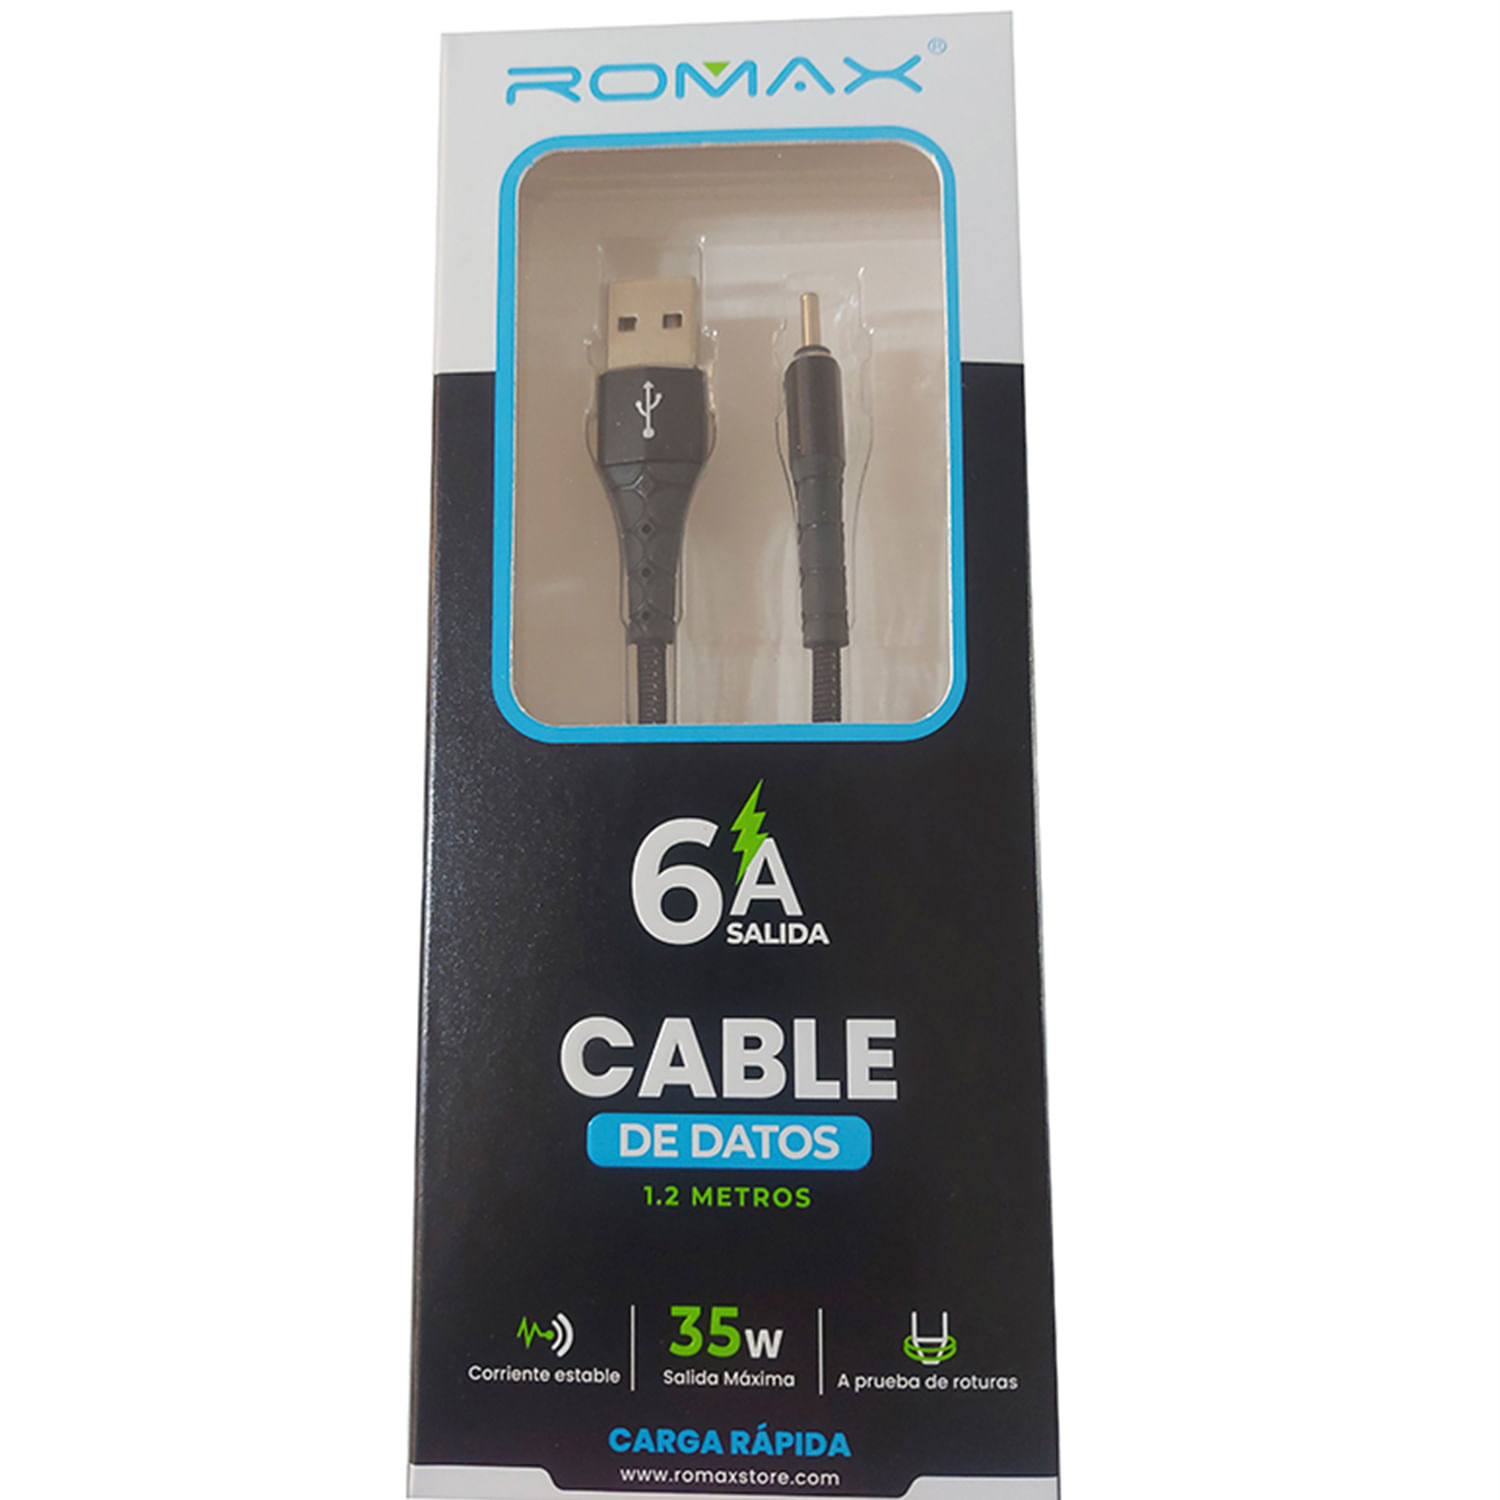 Cable de datos USB-Tipo C - Negro, Carga rápida 6A, Antienrrollamiento